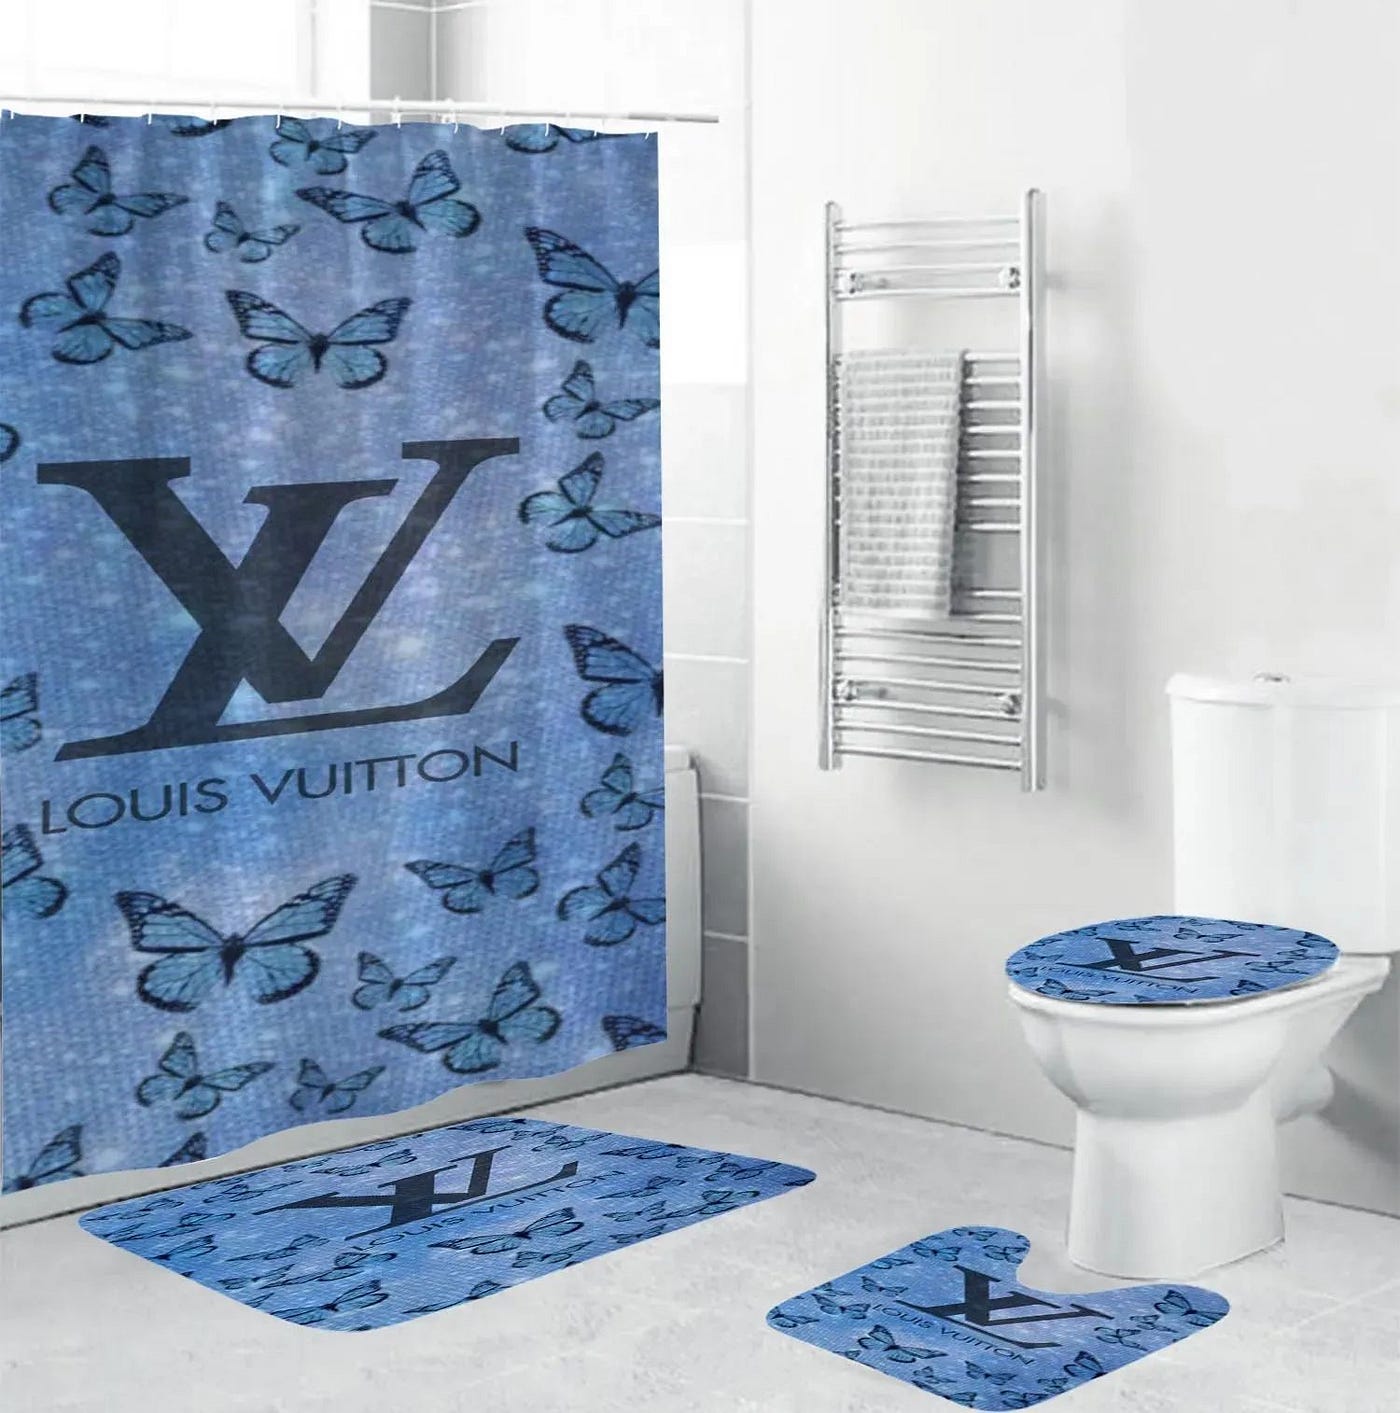 Louis Vuitton Blue White Fashion Luxury Brand Premium Bathroom Set